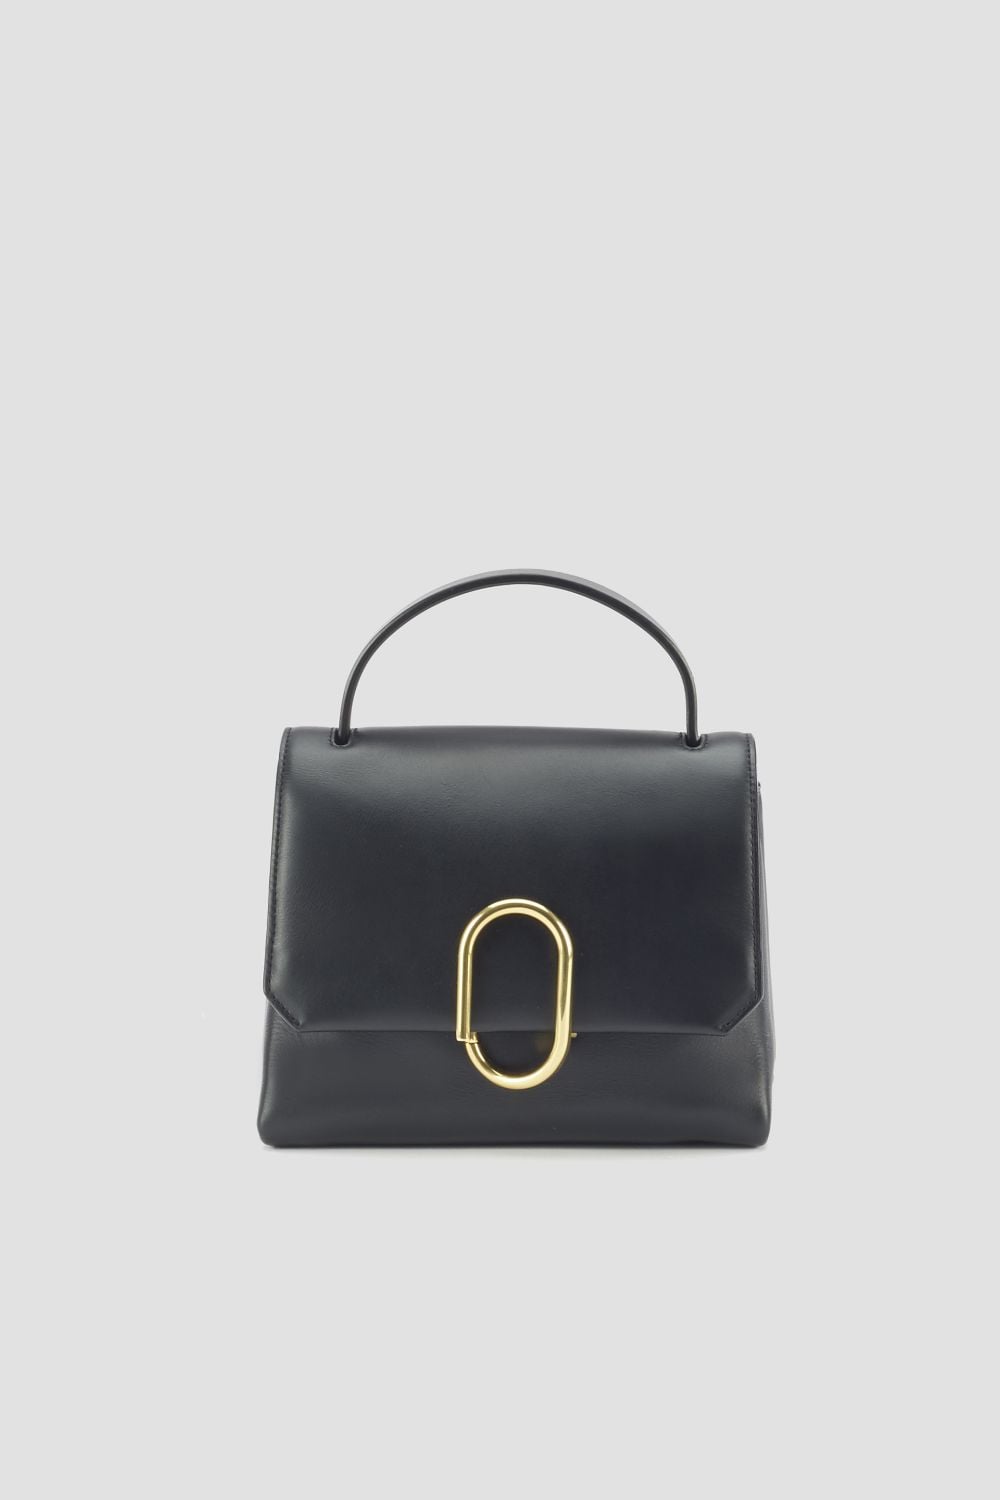 mini Alix satchel bag in black | 3.1 Phillip Lim Official Site